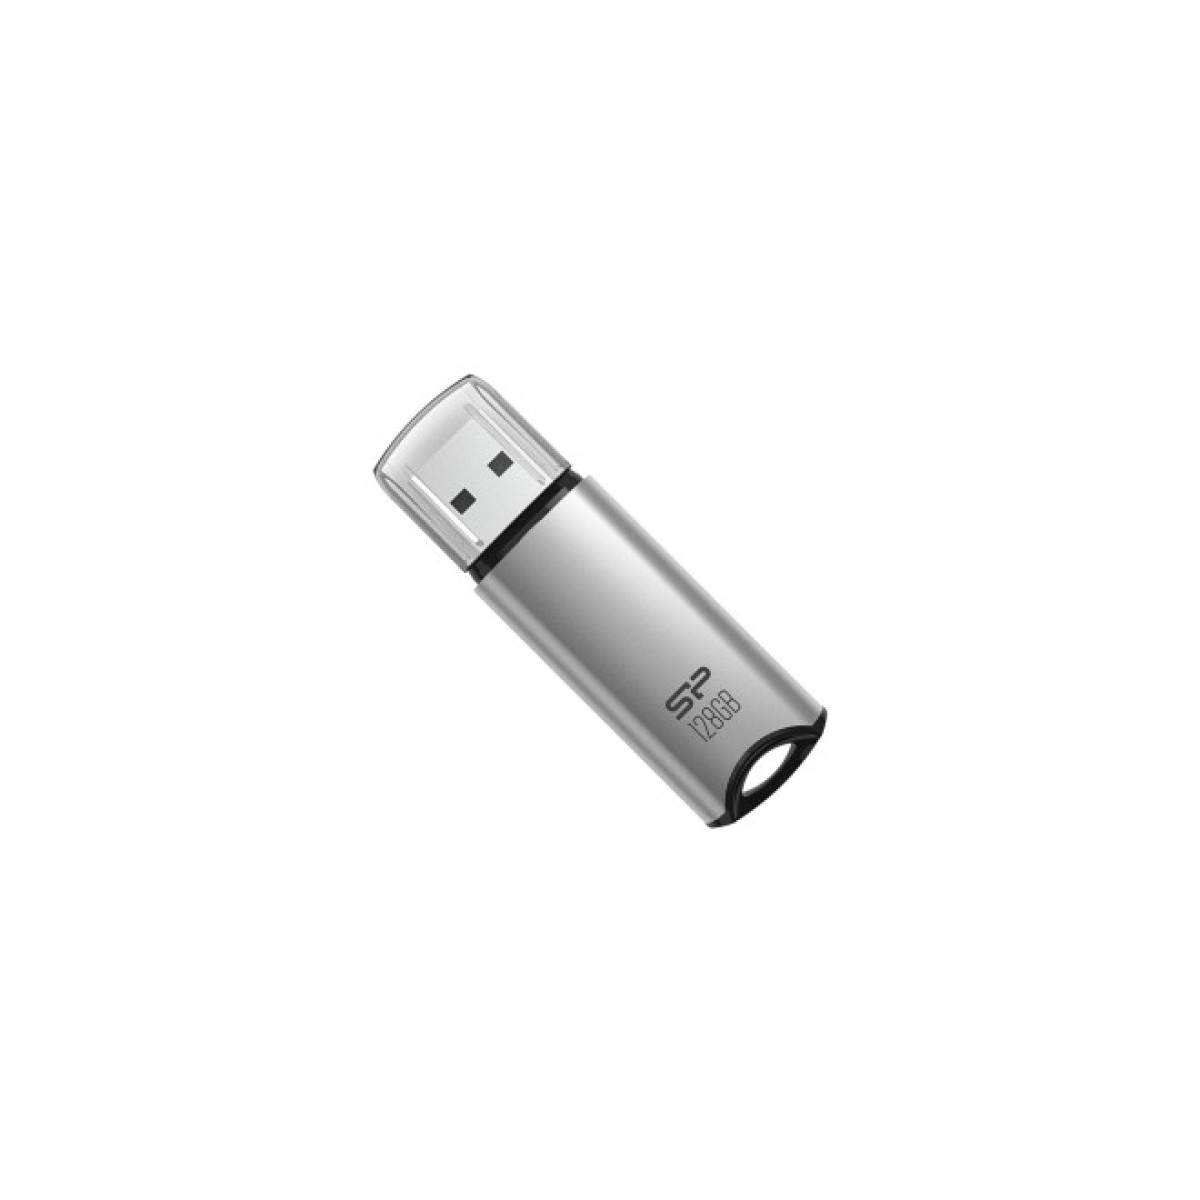 USB флеш накопитель Silicon Power USB 128G SILICON POWER usb3.2 Marvel M02 Aluminum Silver (SP128GBUF3M02V1S) 256_256.jpg